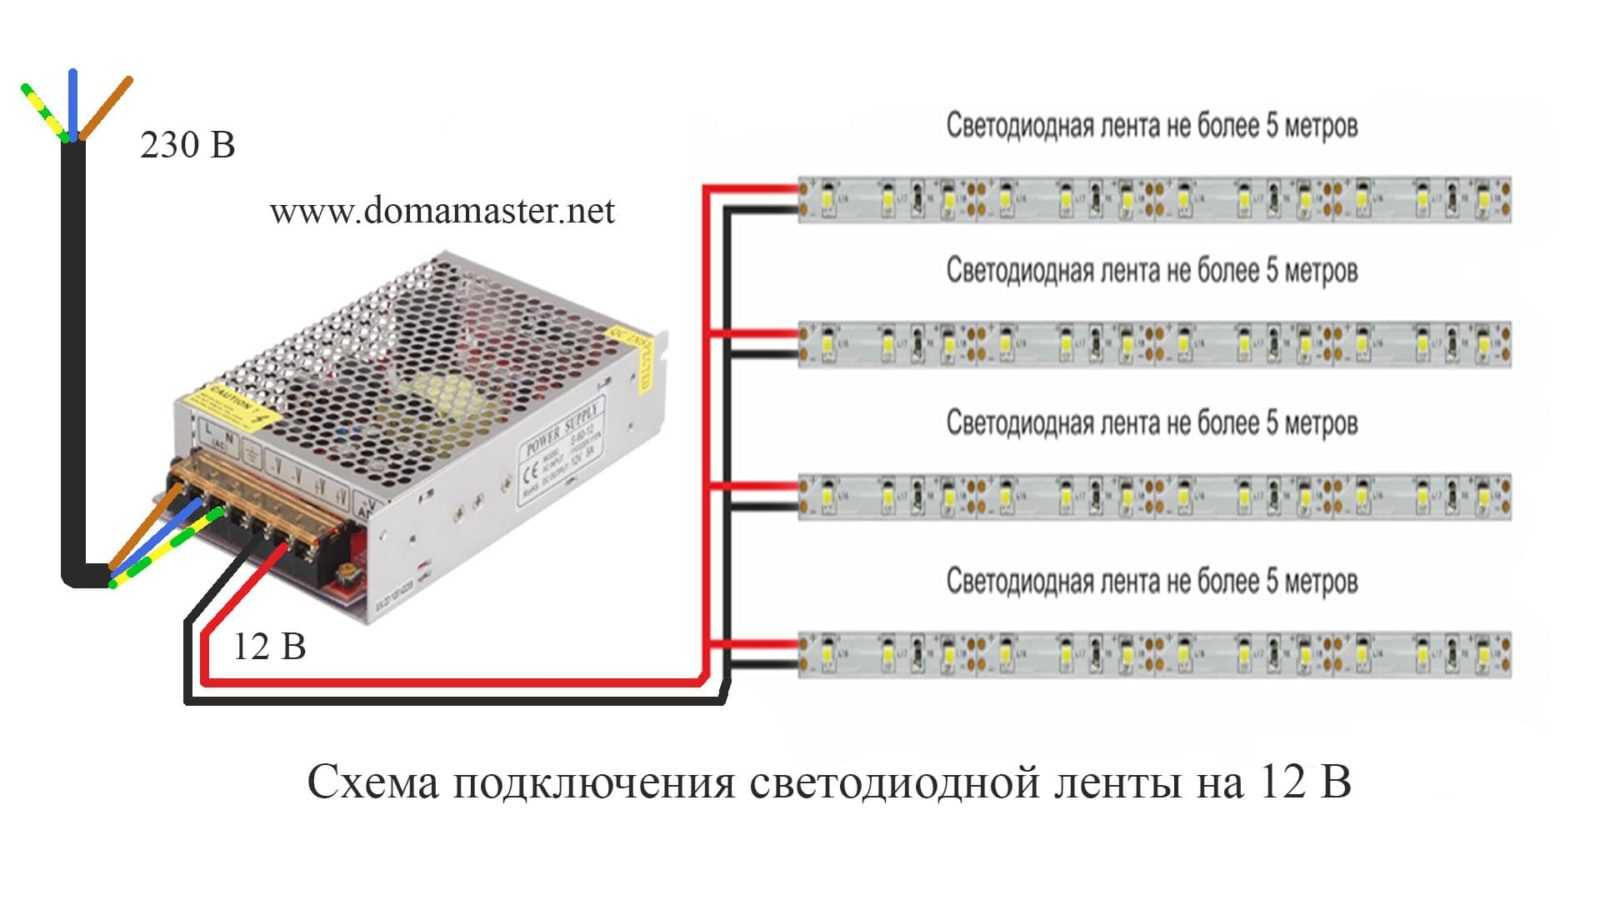 Как подключить светодиод к 220в: схемы подключения диодов в сеть переменного тока на 220 вольт, как включить в питание через конденсатор и резистор без блока питания, какие диоды подходят